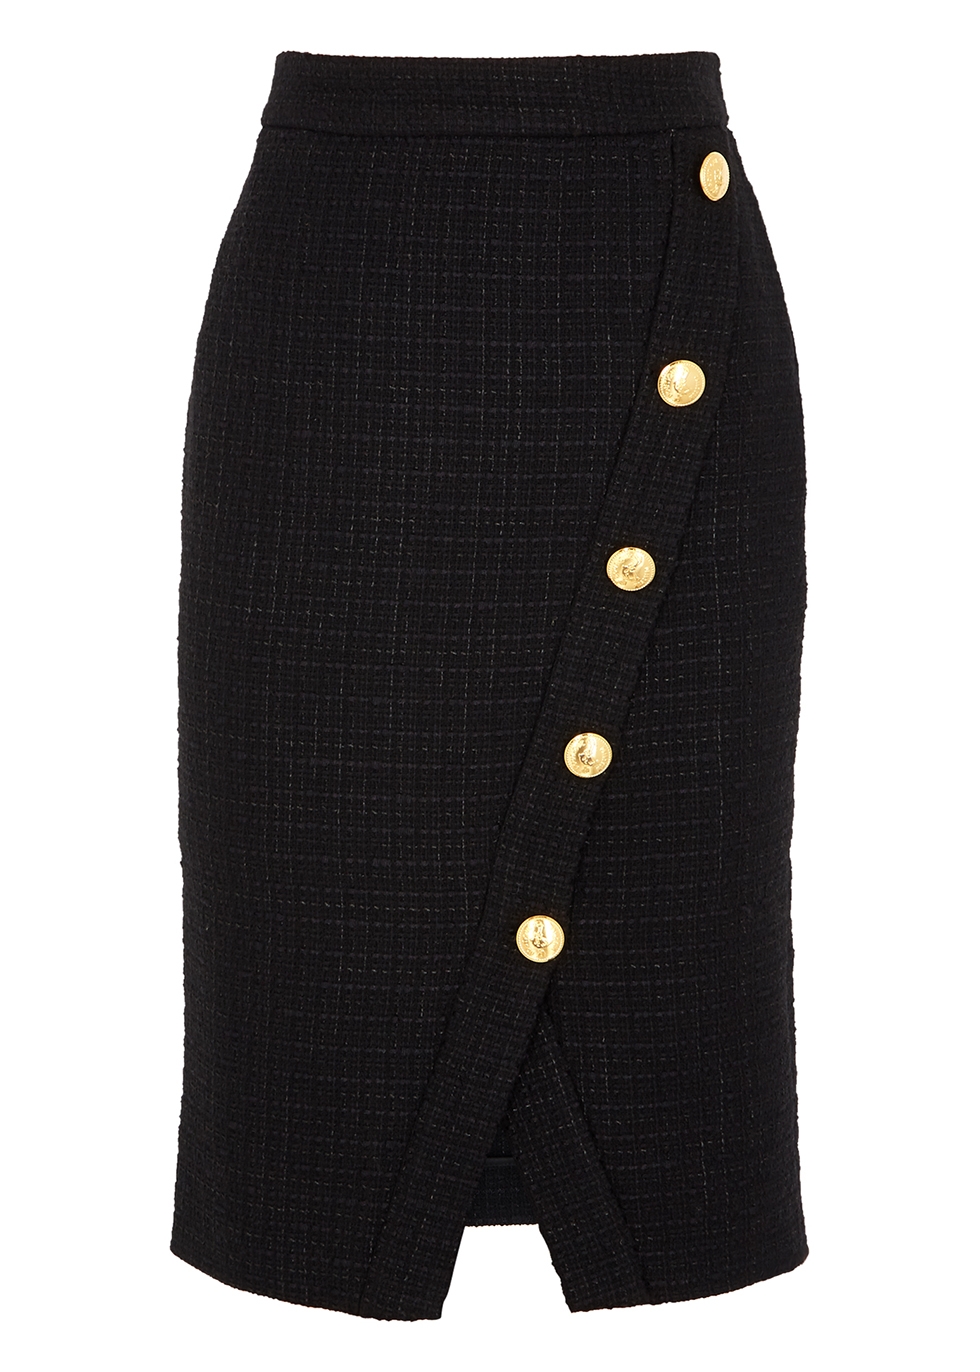 Black tweed pencil skirt